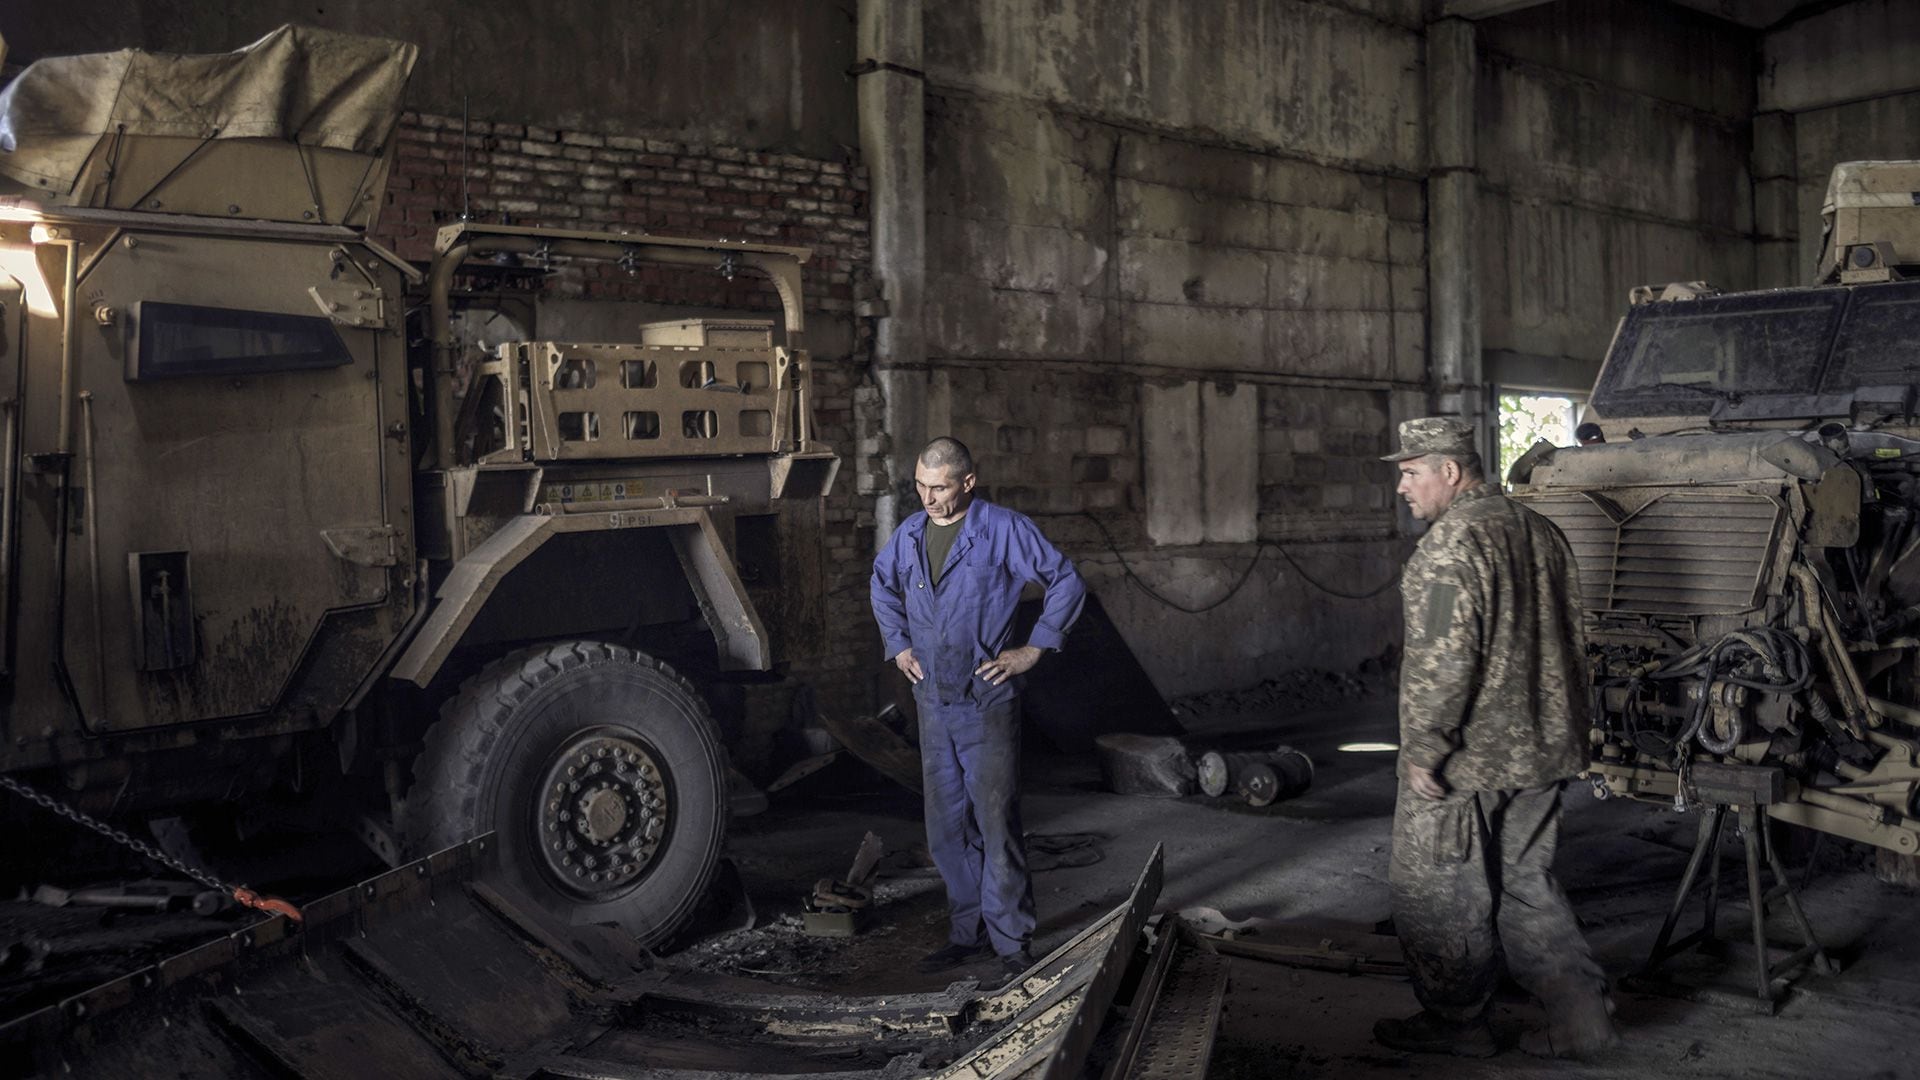 Sustitución del blindaje de un vehículo de apoyo táctico en un taller del sur de Ucrania (Diego Ibarra Sanchez/The New York Times)